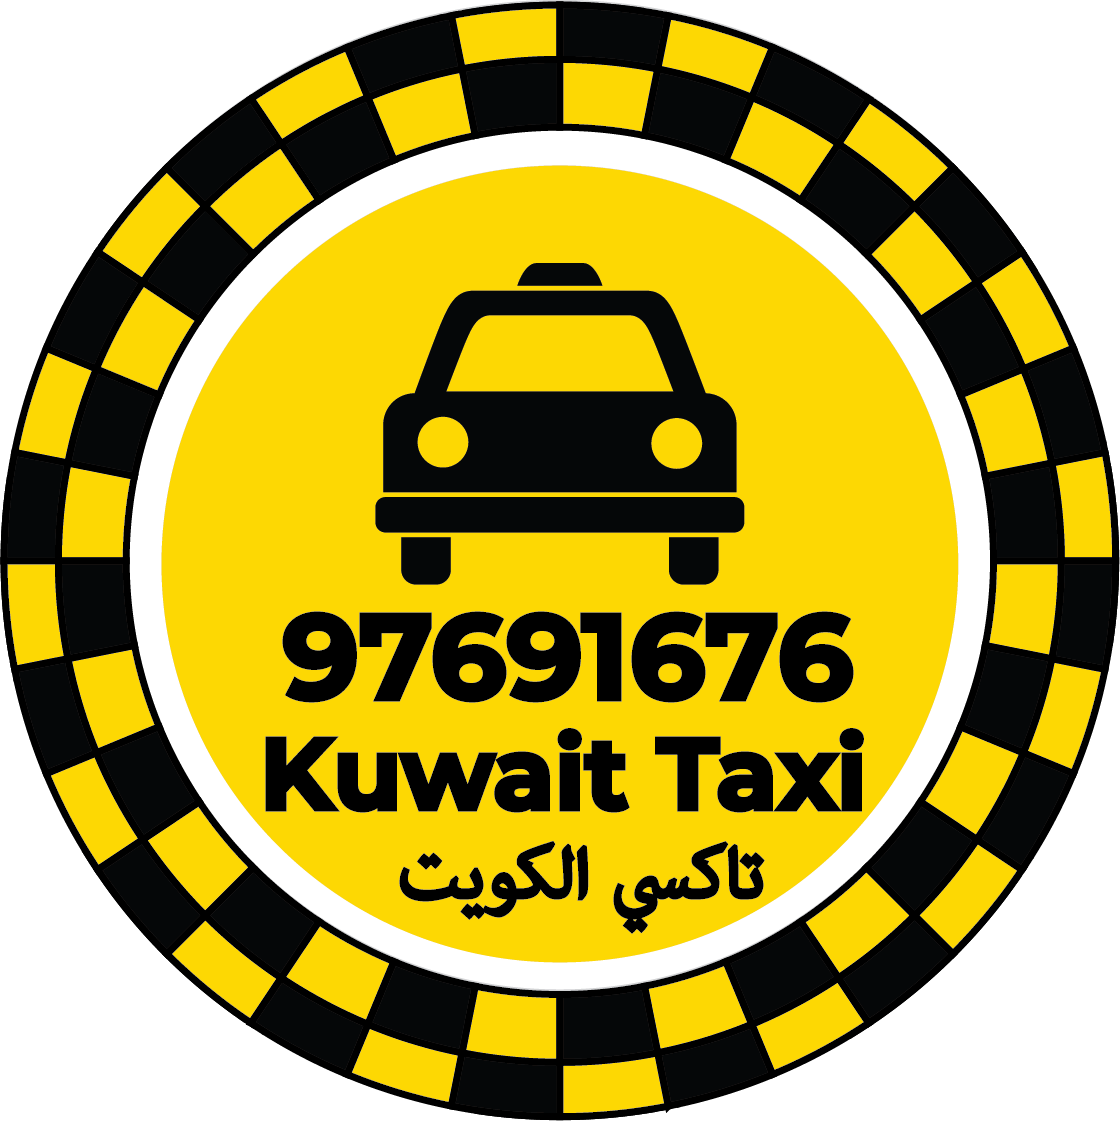 تاكسي بنيدر 97691676 - رقم لكويت تاكسي بنيدر